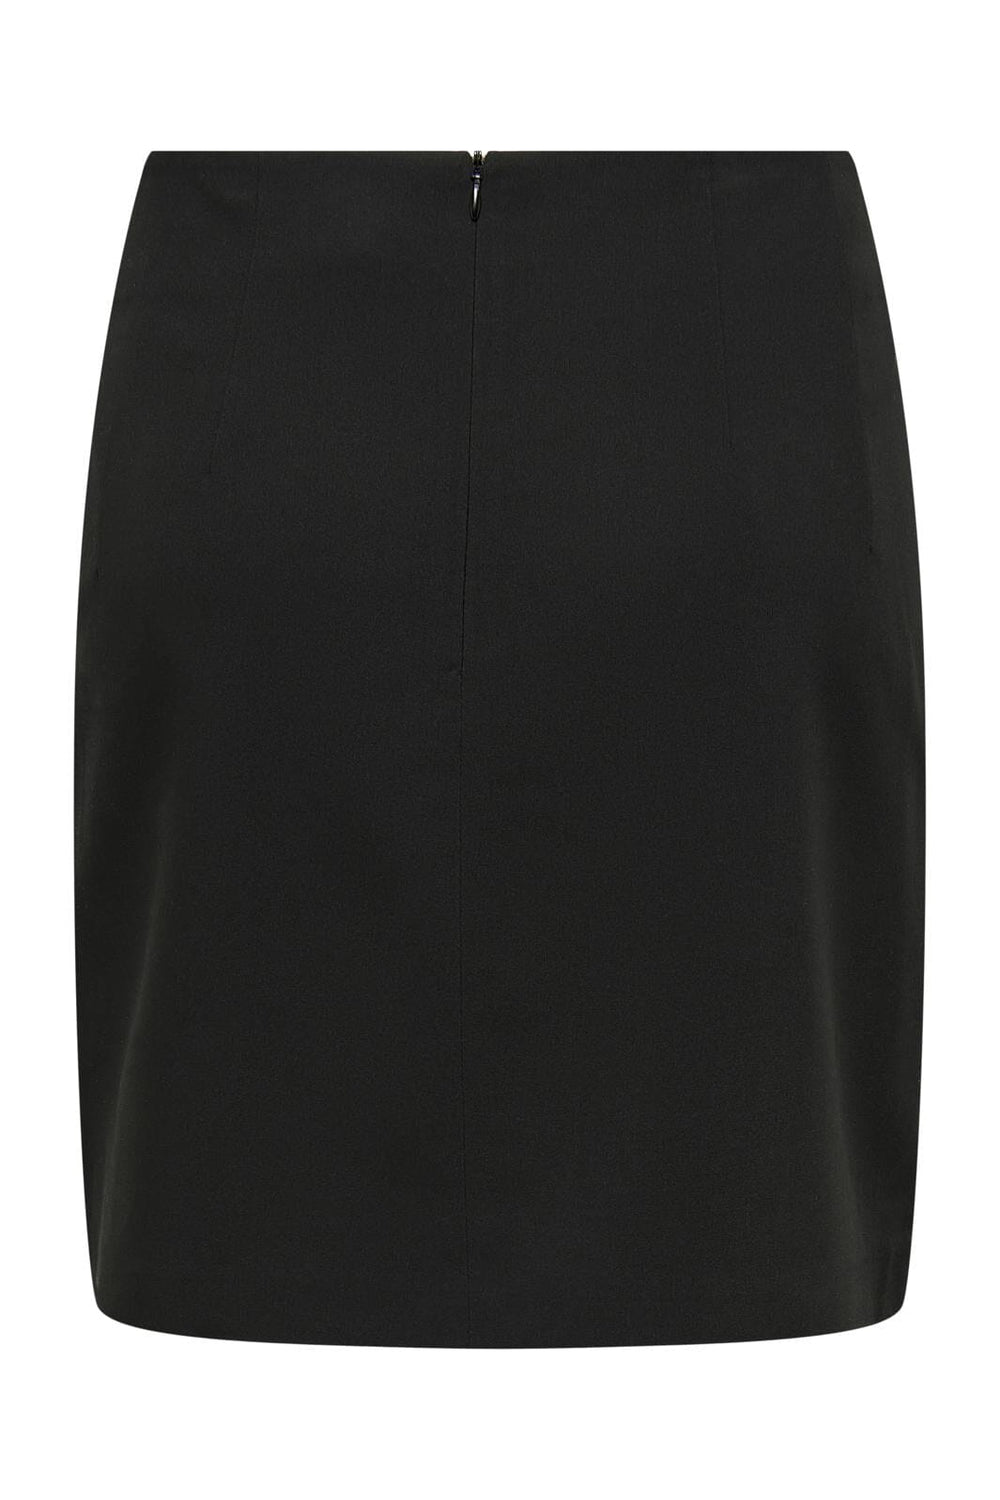 Only - Onlfia Tailored Skirt - 4292094 Black